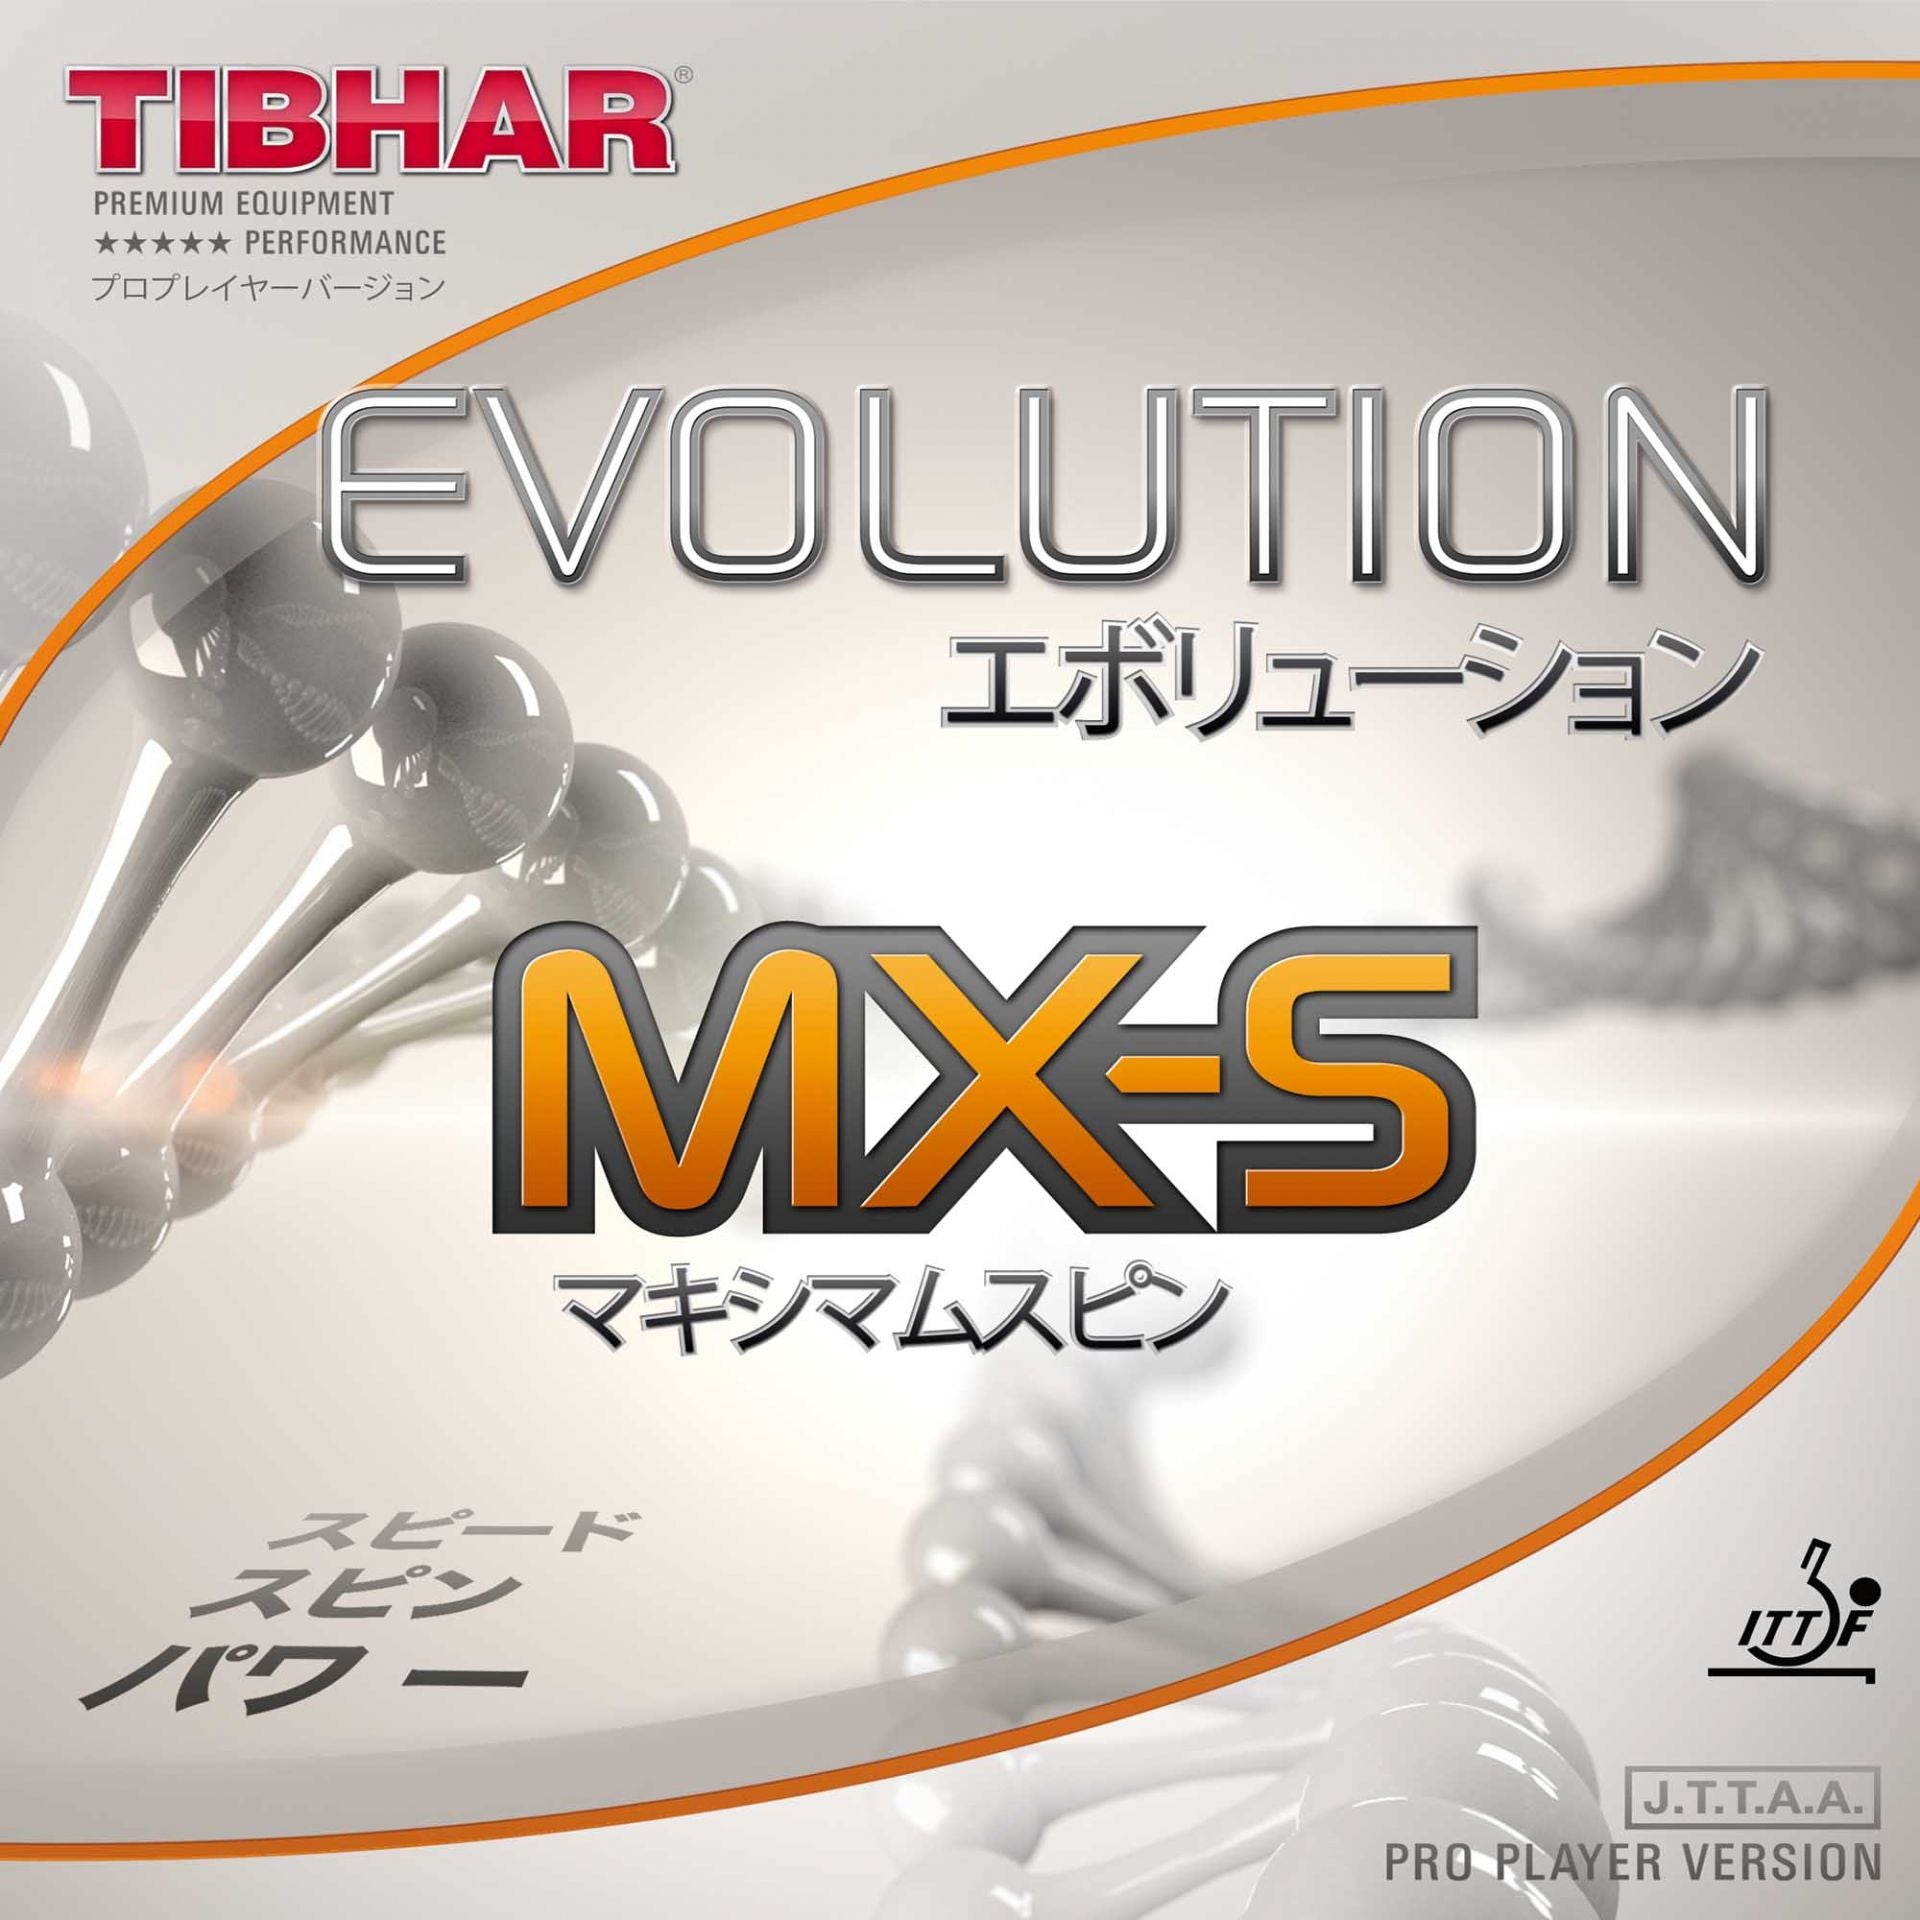 TIBHAR Evolution MX-S - Table Tennis Rubber